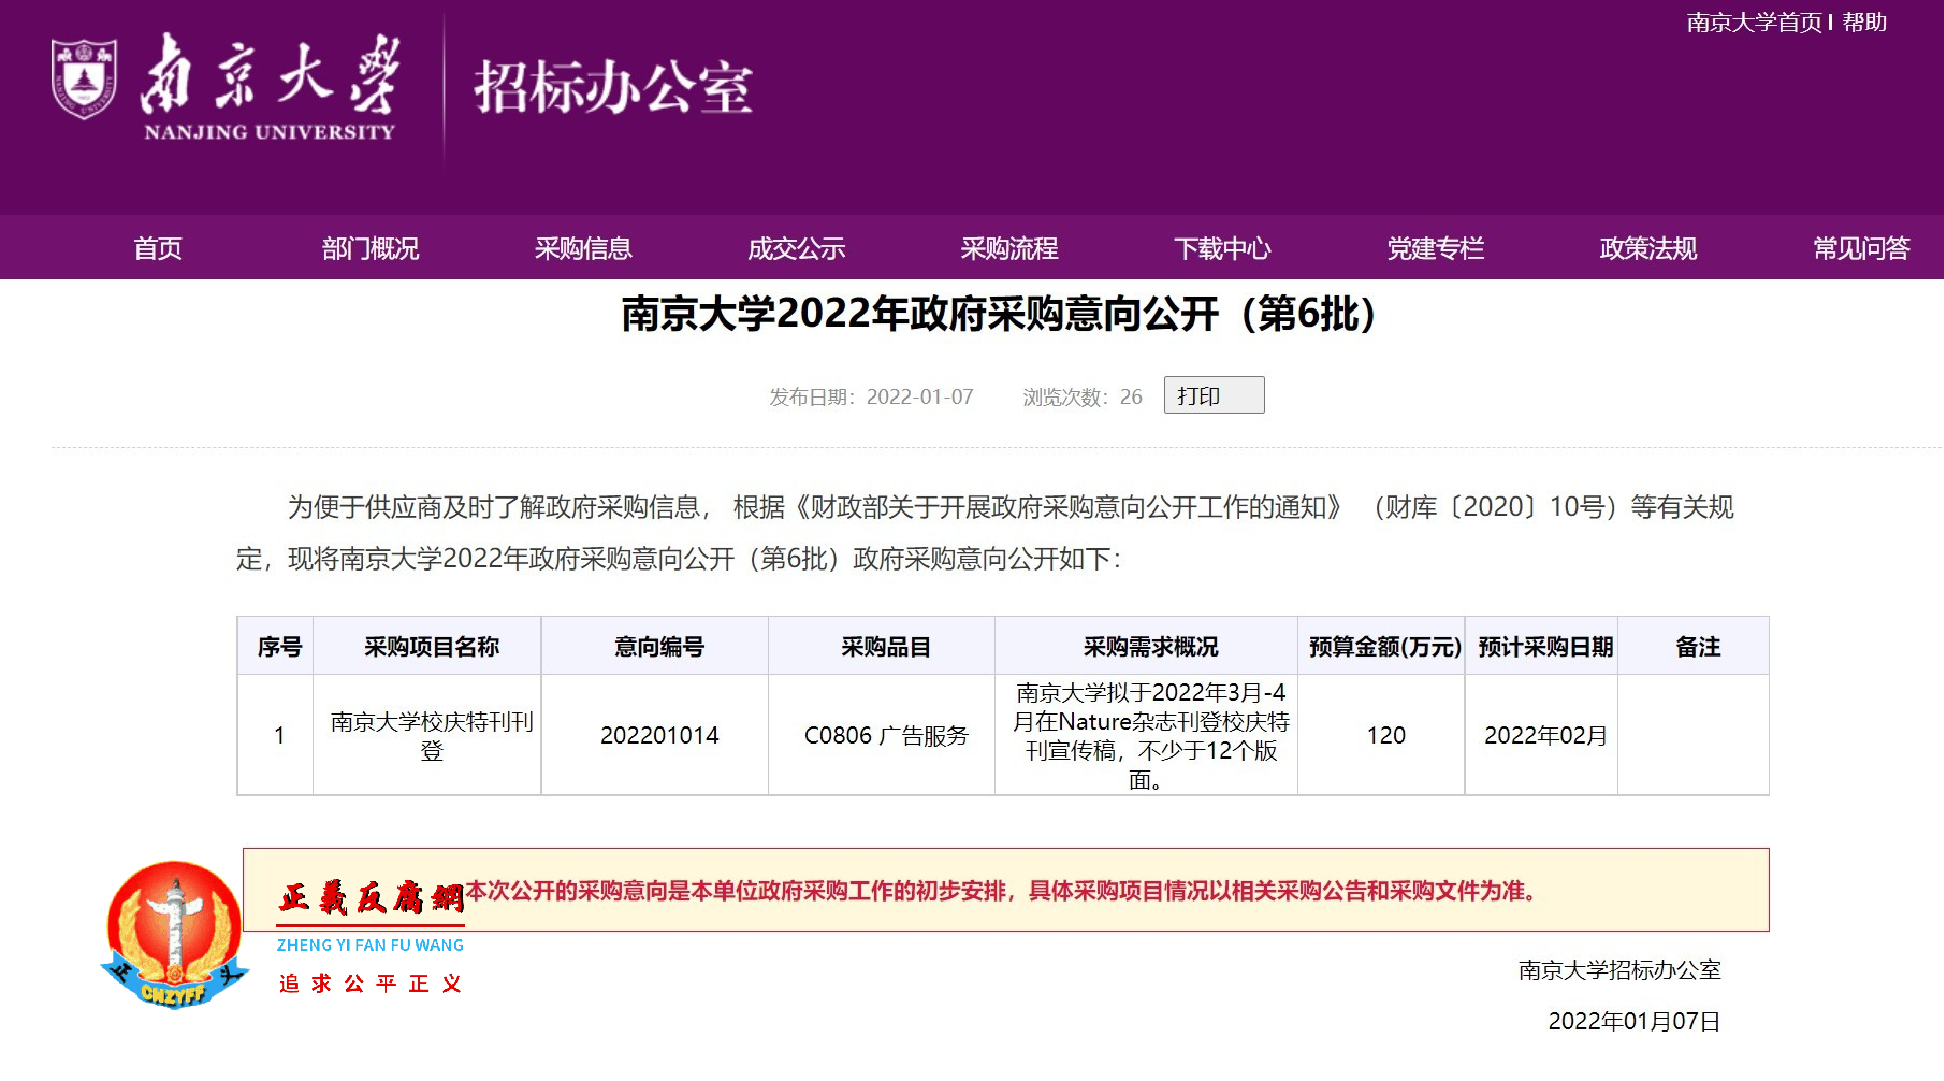 中国号称顶尖高校之一的南京大学因为“120万”元人民币火了。南京大学2022年政府采购意向公开（第6批）.png